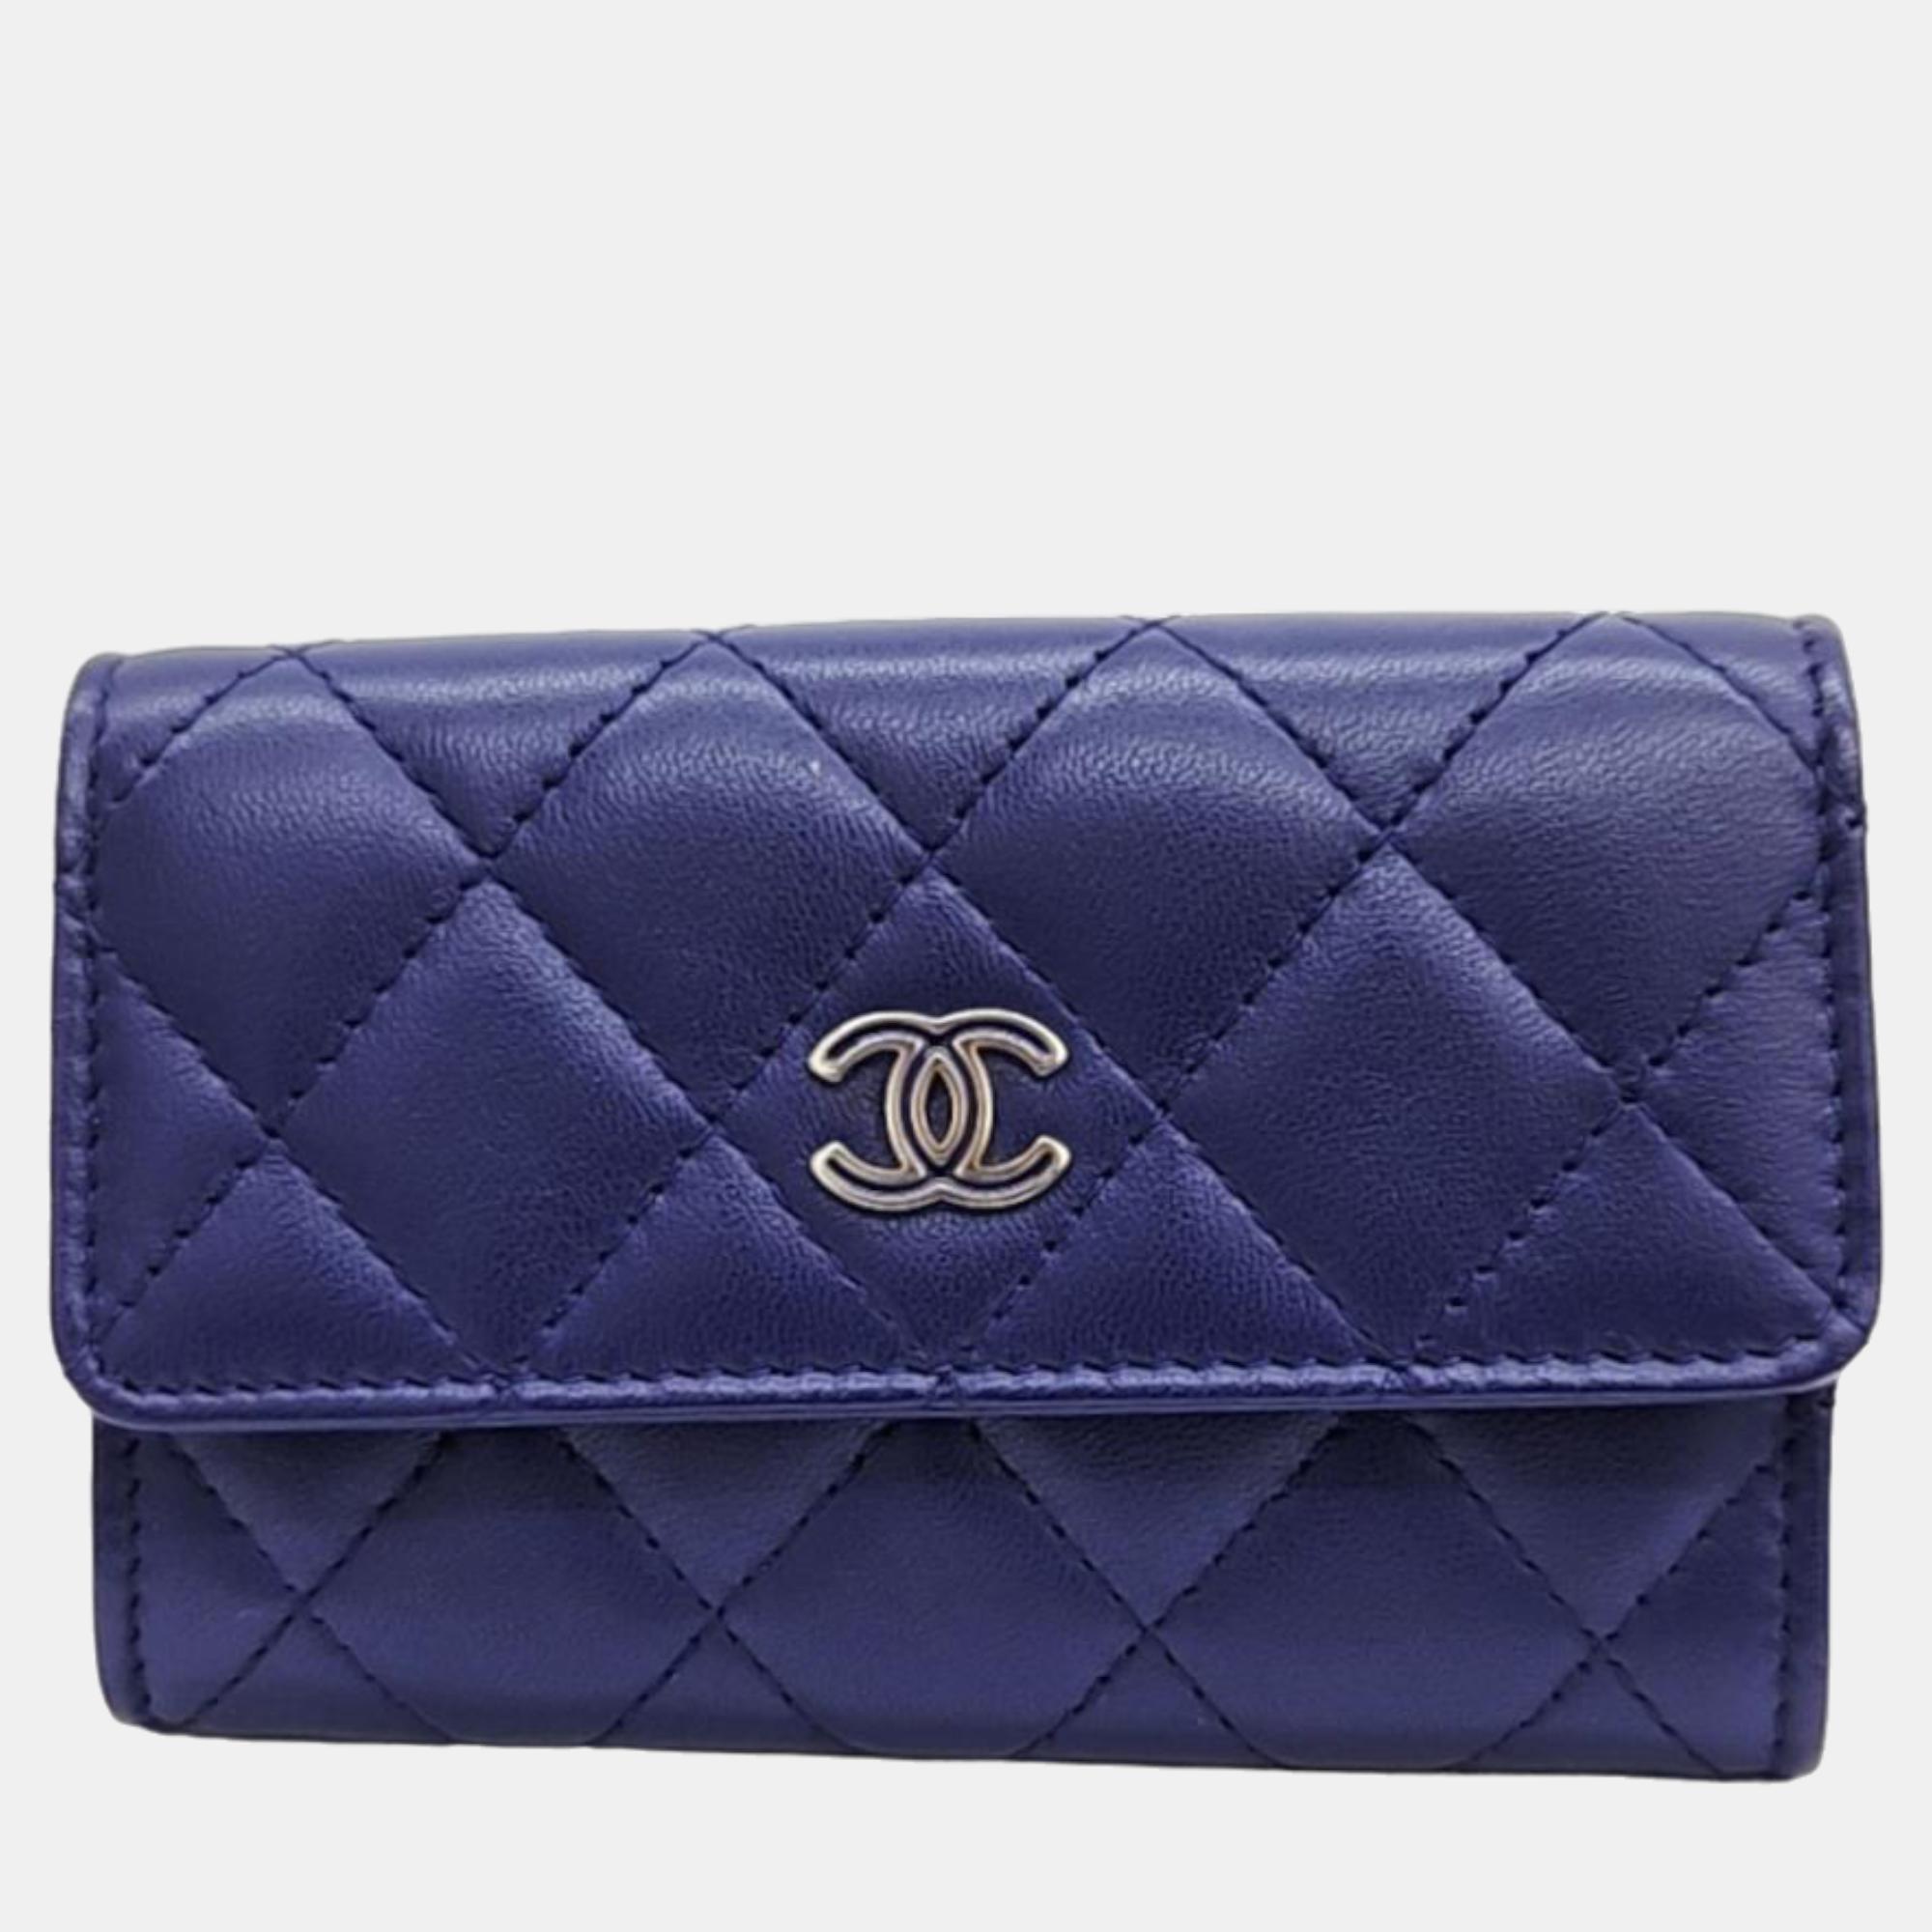 Chanel blue lambskin card wallet